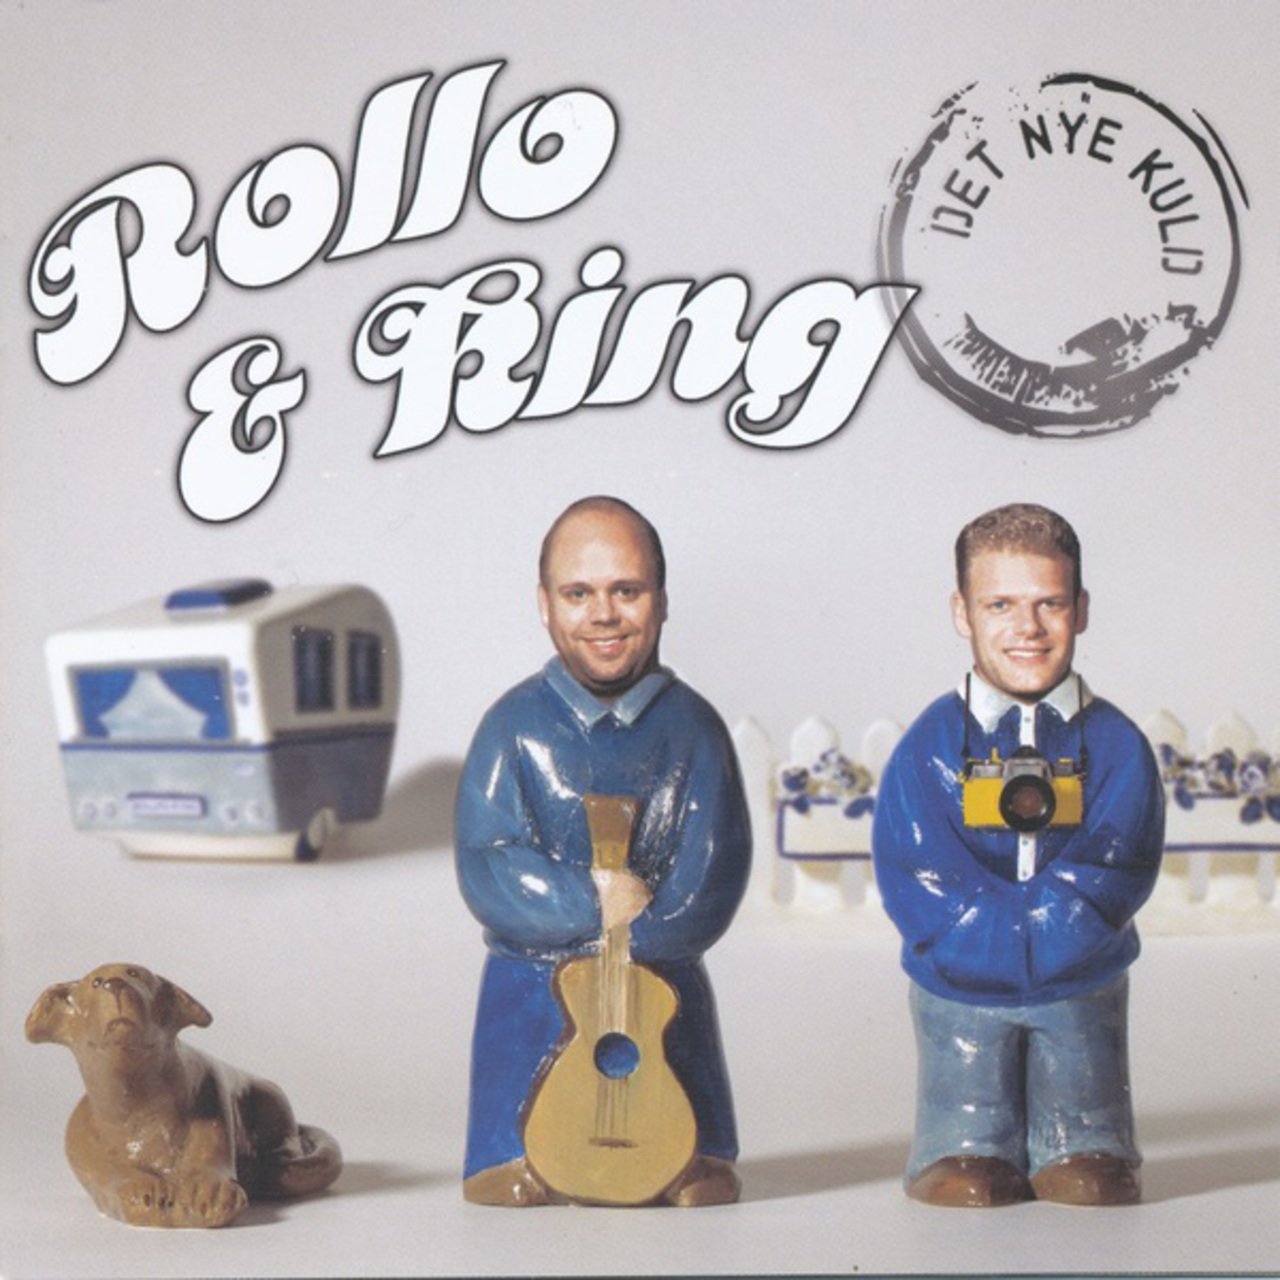 Rollo &amp; King Det nye kuld cover artwork